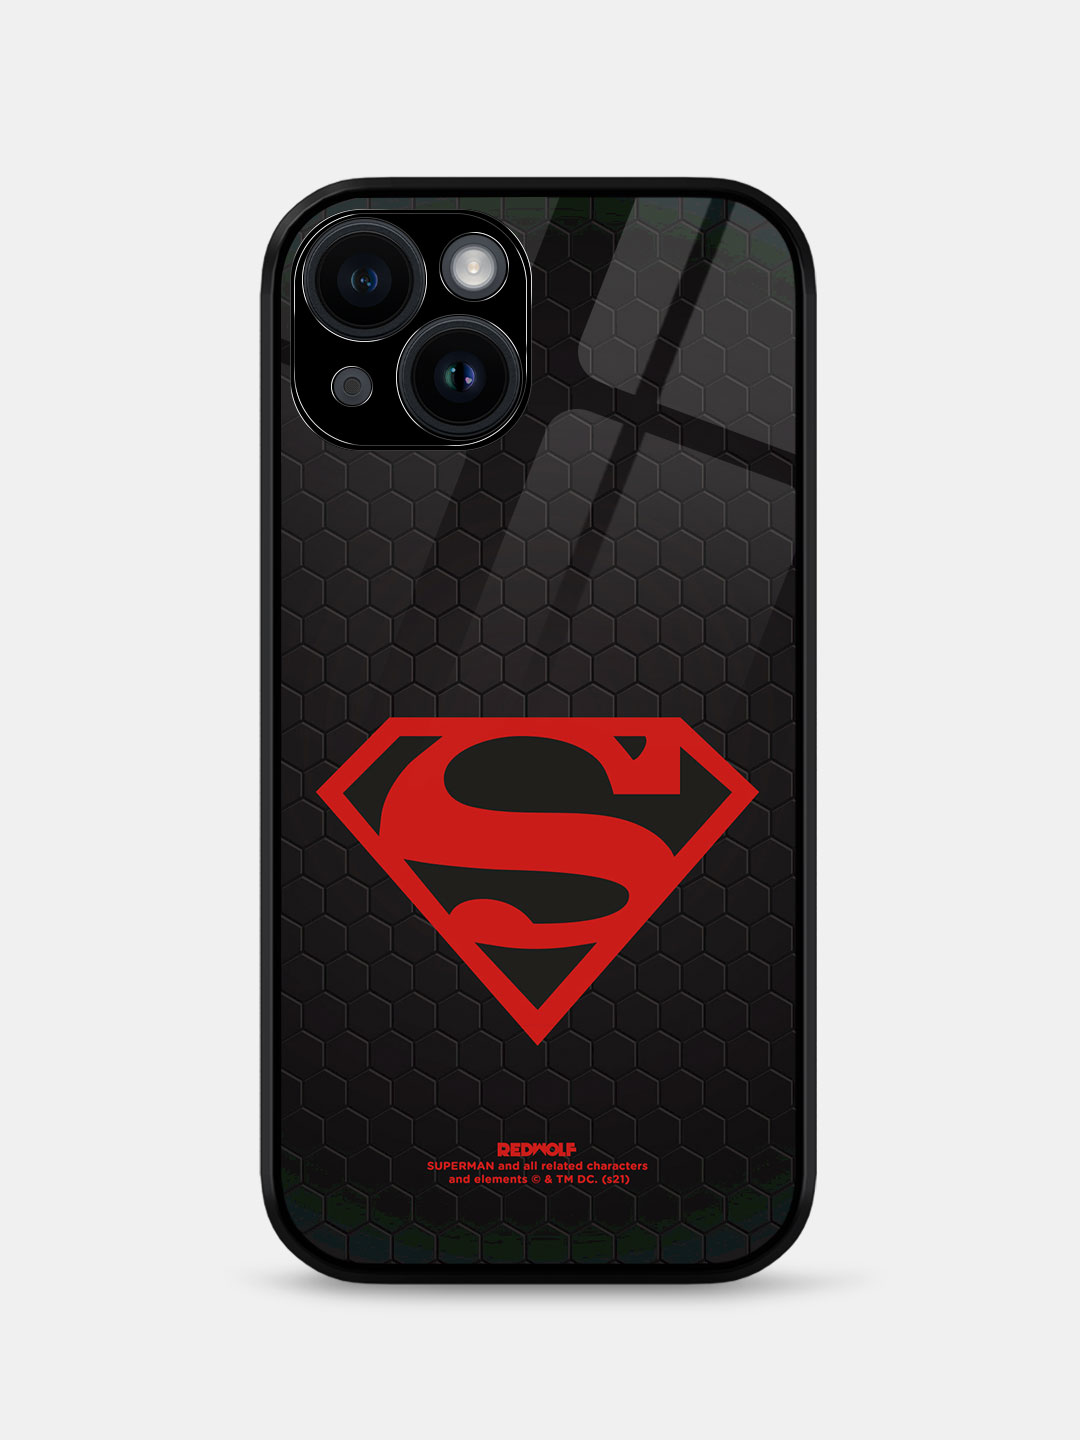 Superman: The Black Suit Tank Top | Justice League Official Merchandise |  Redwolf